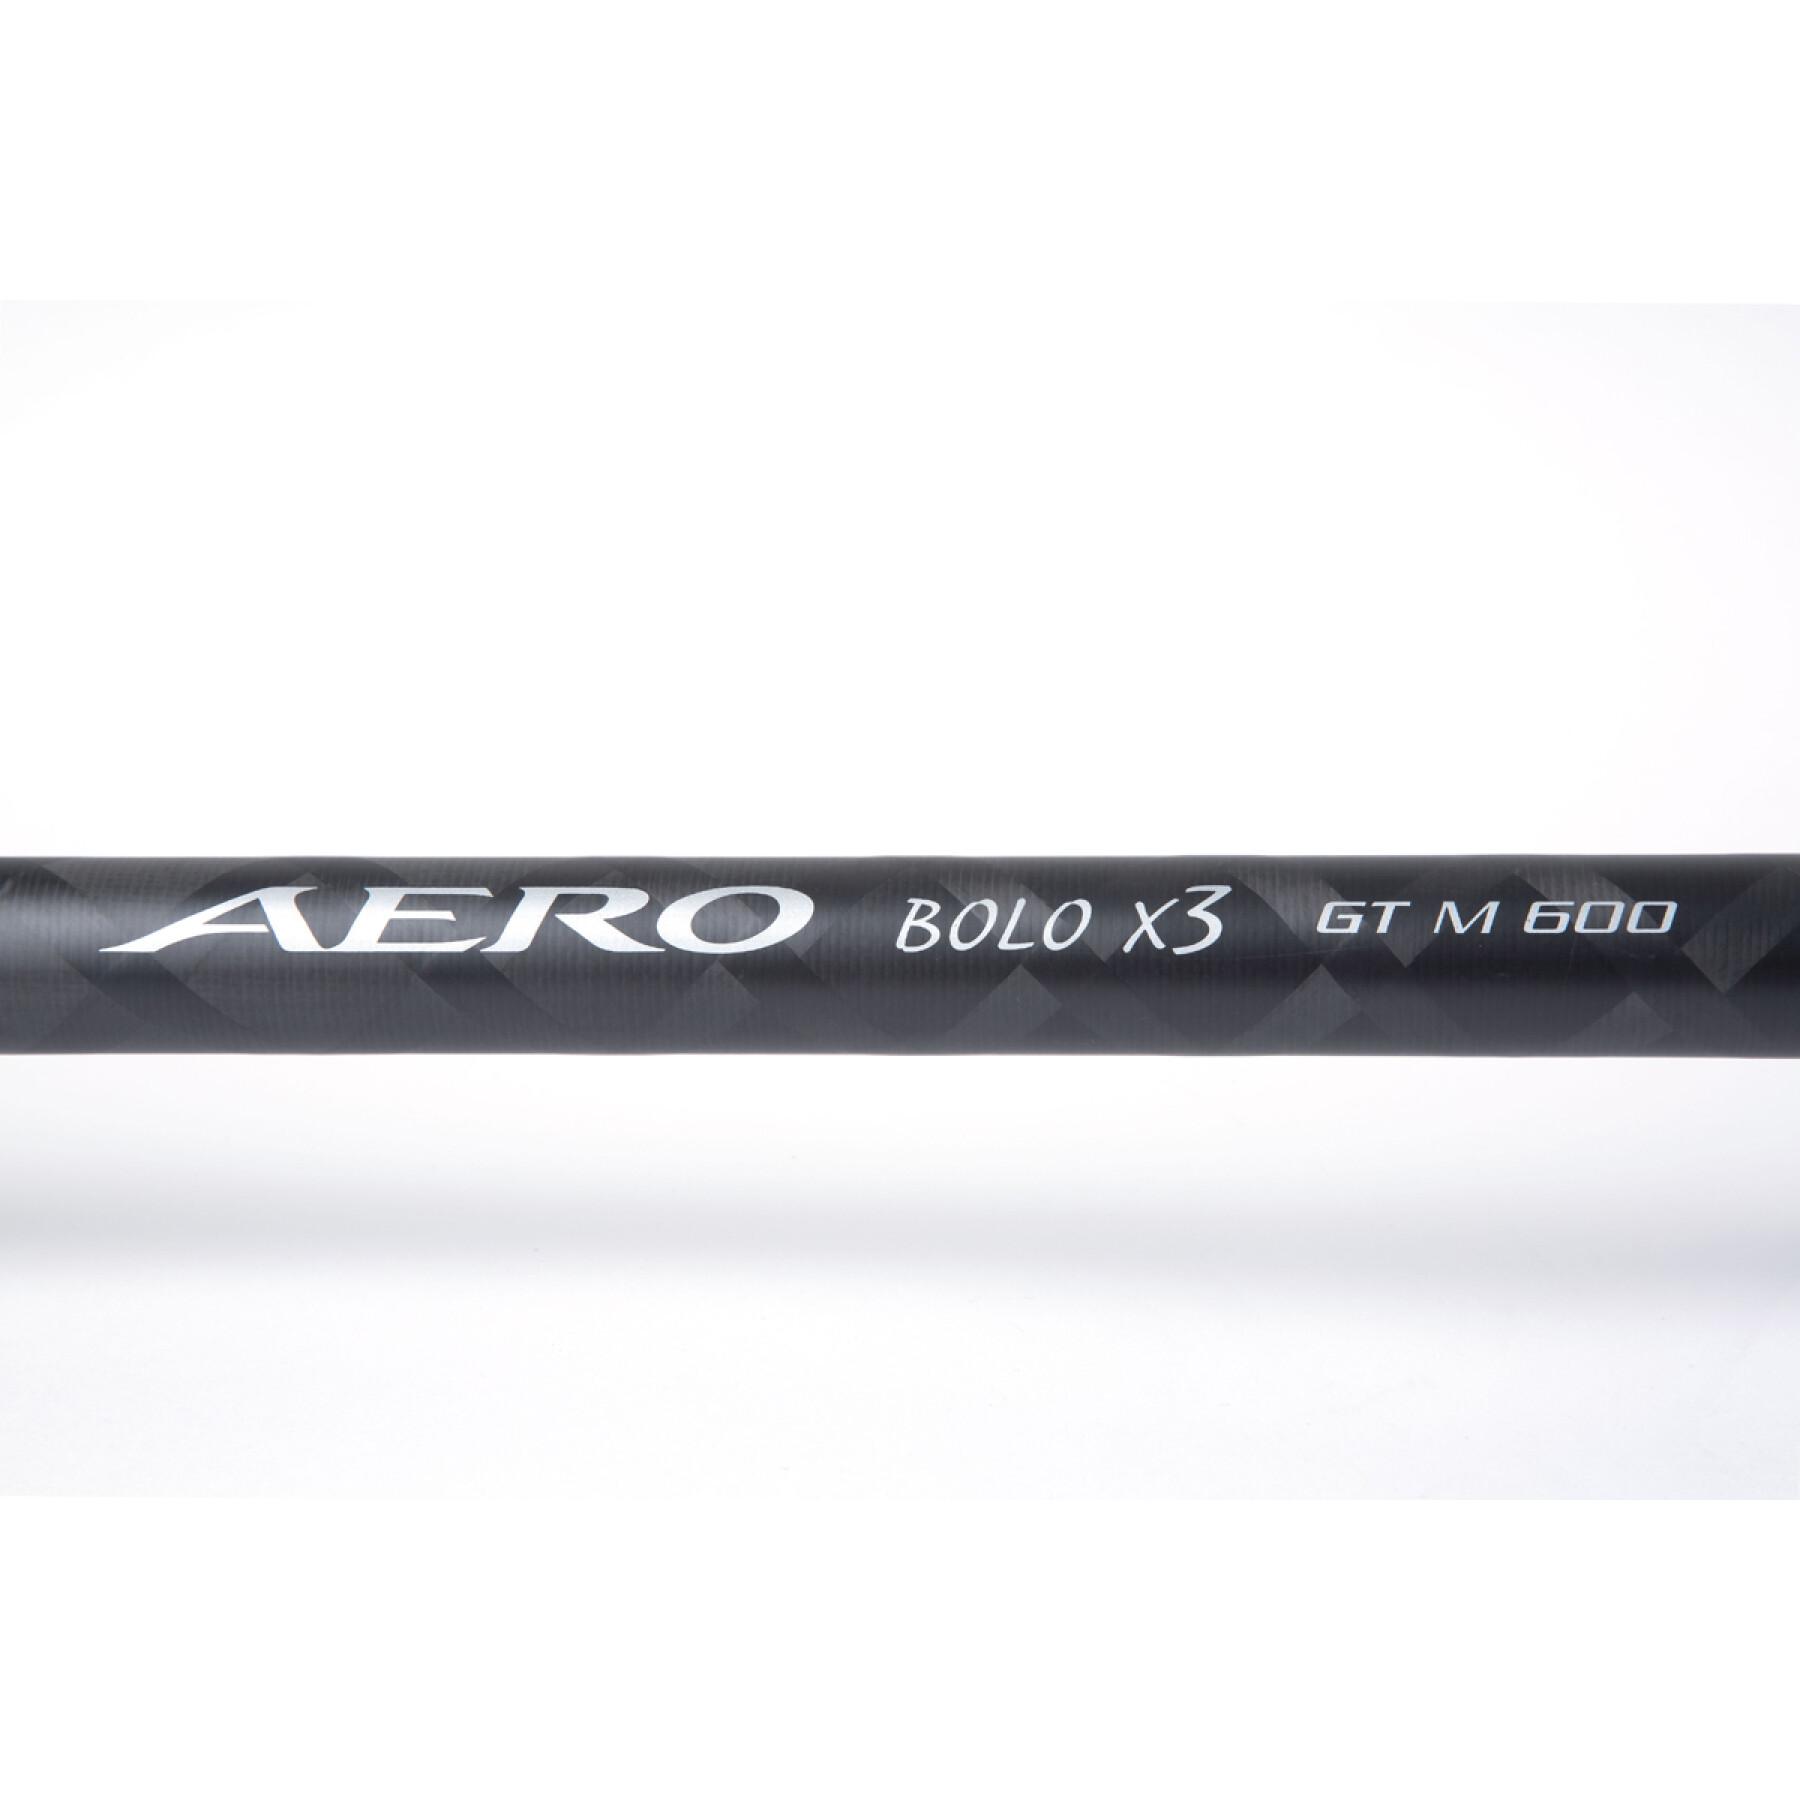 Drążek teleskopowy Shimano Aero X3 Bolo GT 18 g